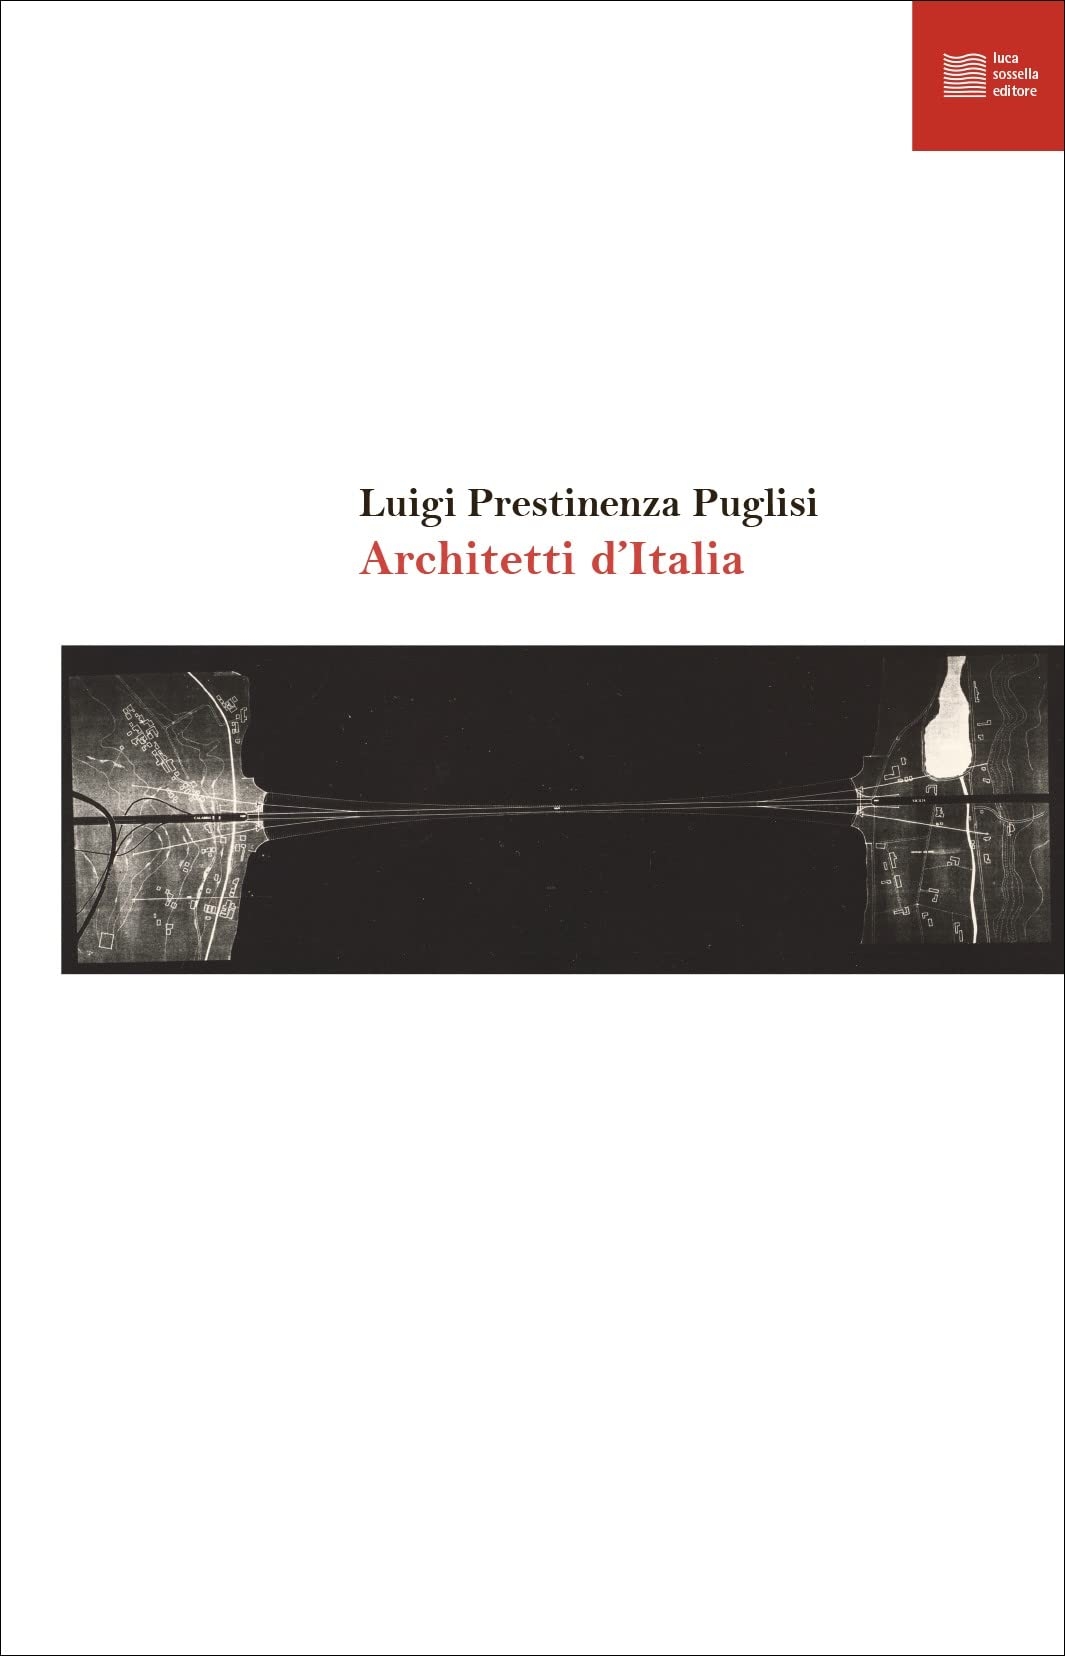 Luigi Prestinenza Puglisi – Architetti d'Italia (Luca Sossella, Roma 2022)